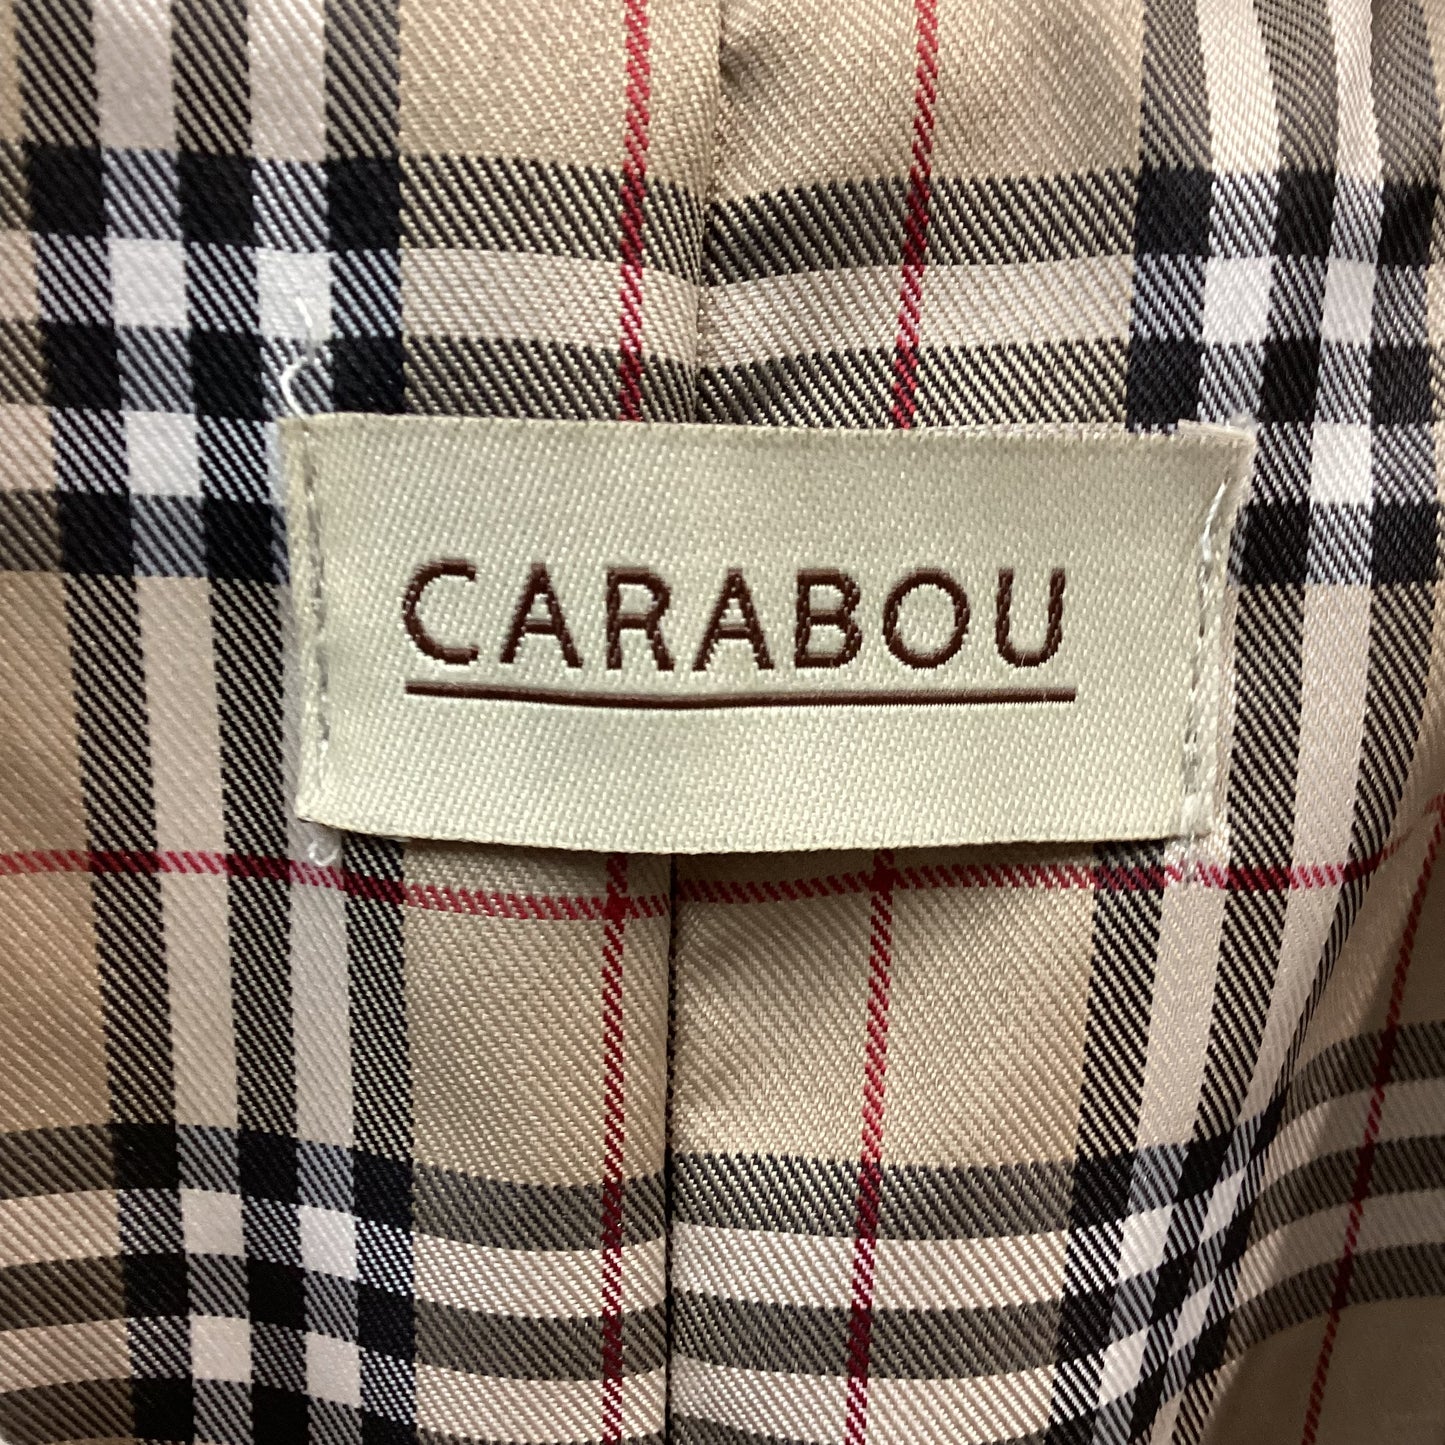 BNWT Carabou Coat Beige Tartan Lining Size L